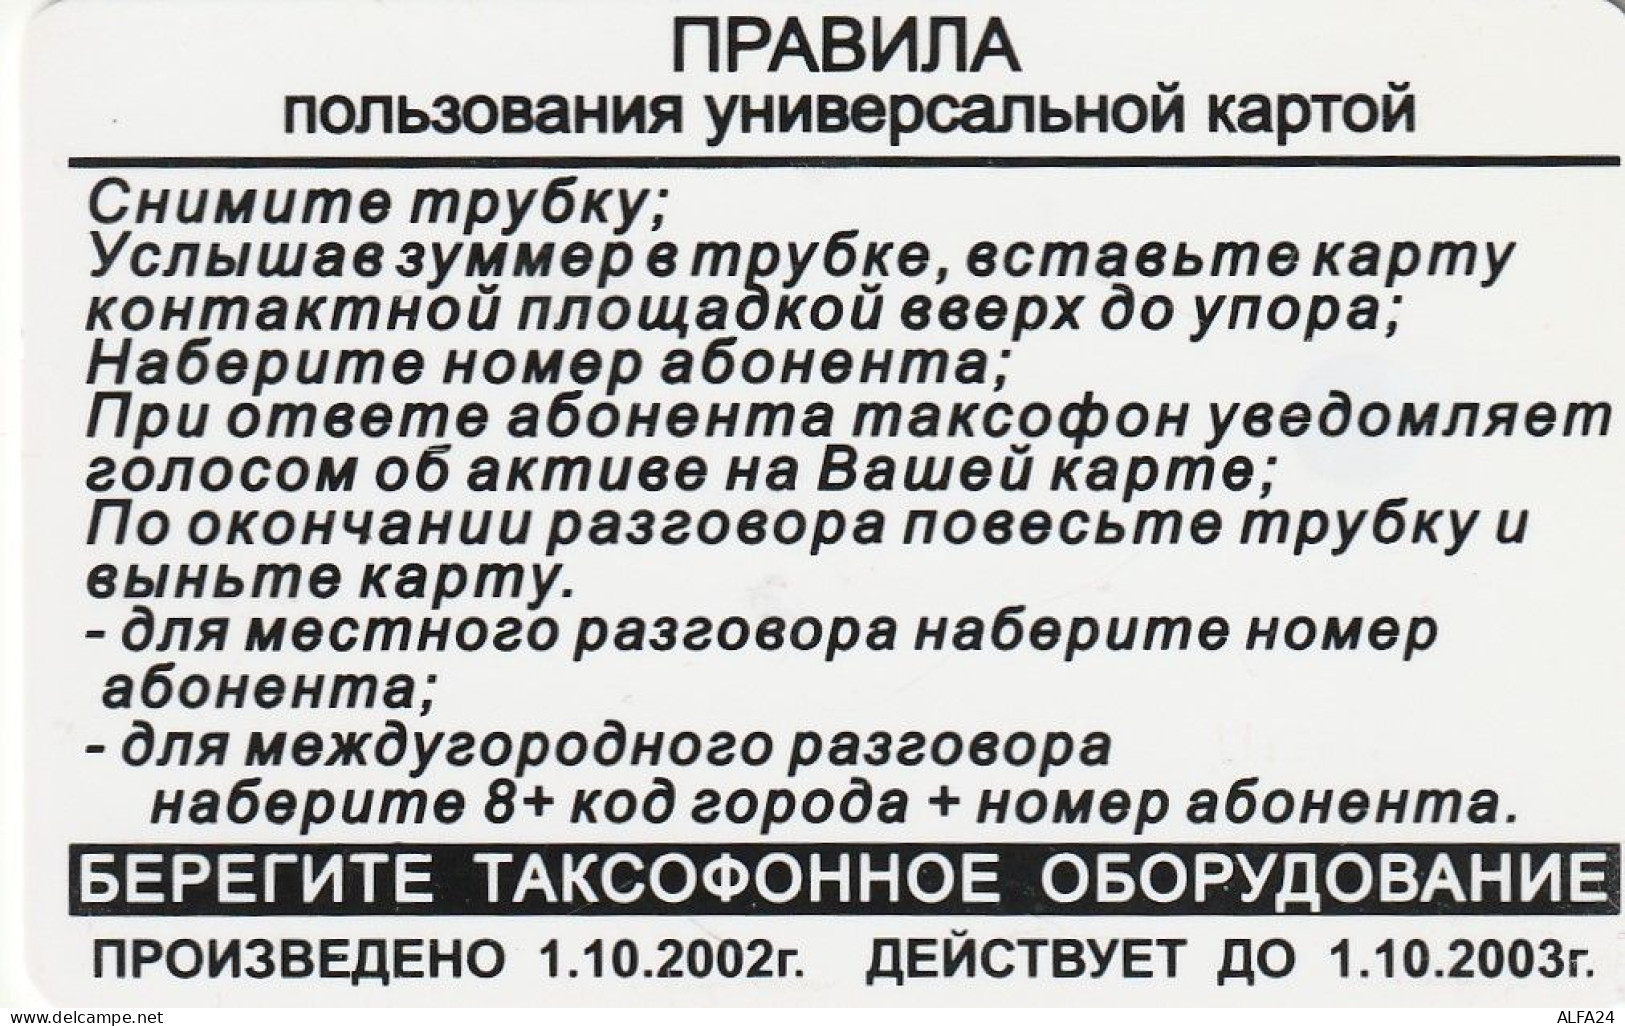 PHONE CARD RUSSIA Svyazinform + VolgaTelecom, Saransk, Mordovia (RUS79.7 - Rusland